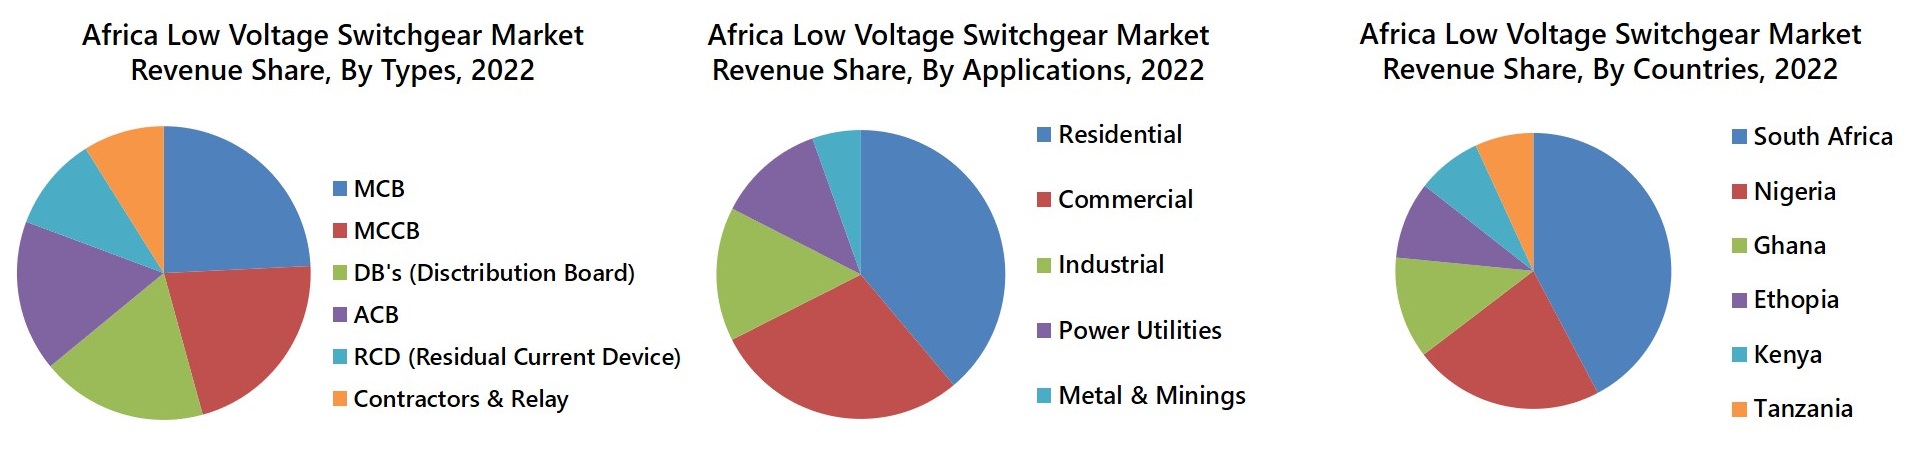 Africa Low Voltage Switchgear Market